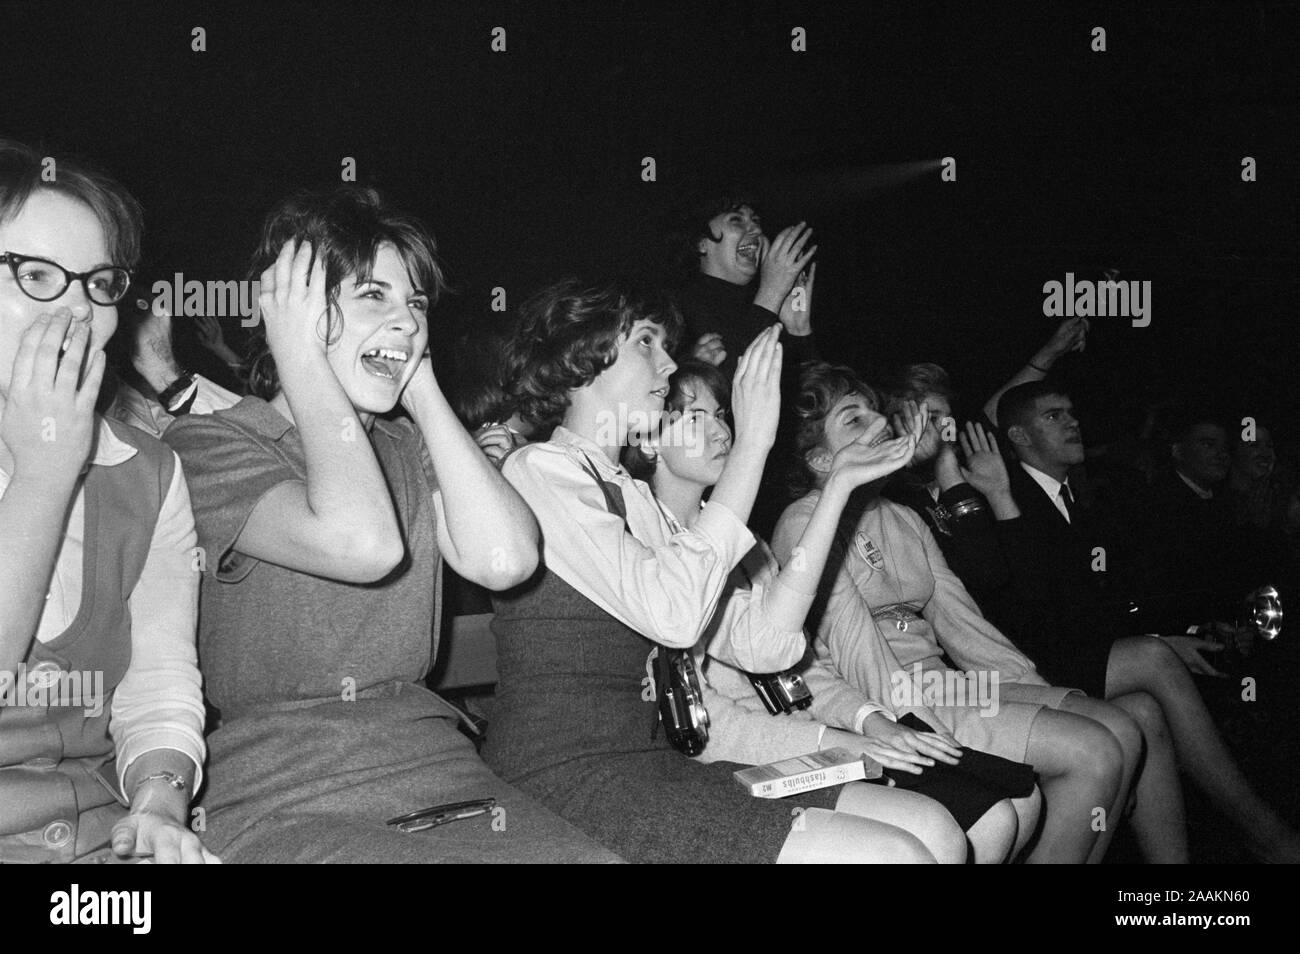 Fans excités réagissant à la Beatles Rock and Roll britannique effectuant, Washington Coliseum, Washington, D.C., USA, Photo de Marion S., Trikosko 11 Février, 1964 Banque D'Images